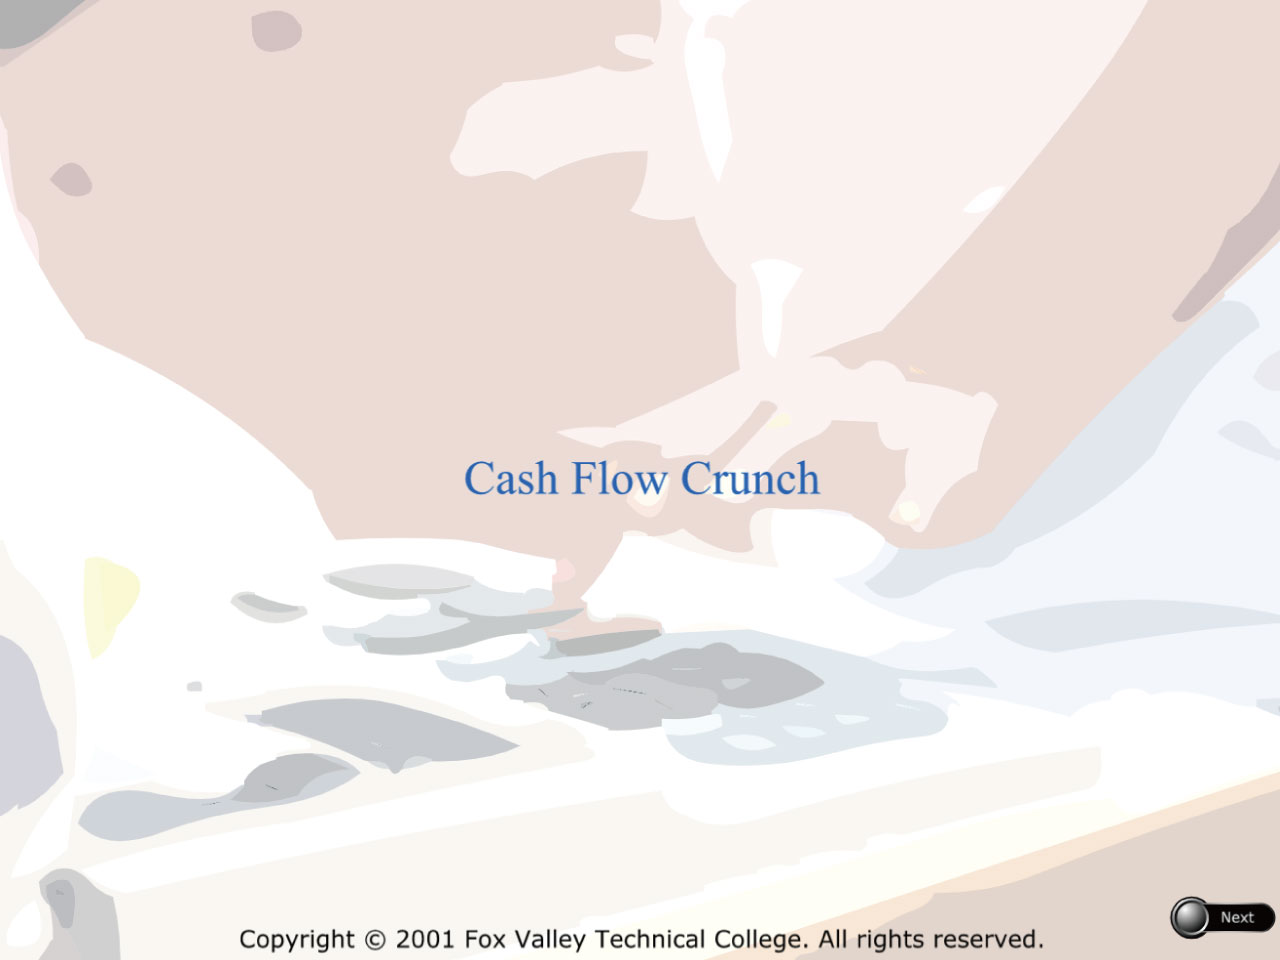 Cash Flow Crunch